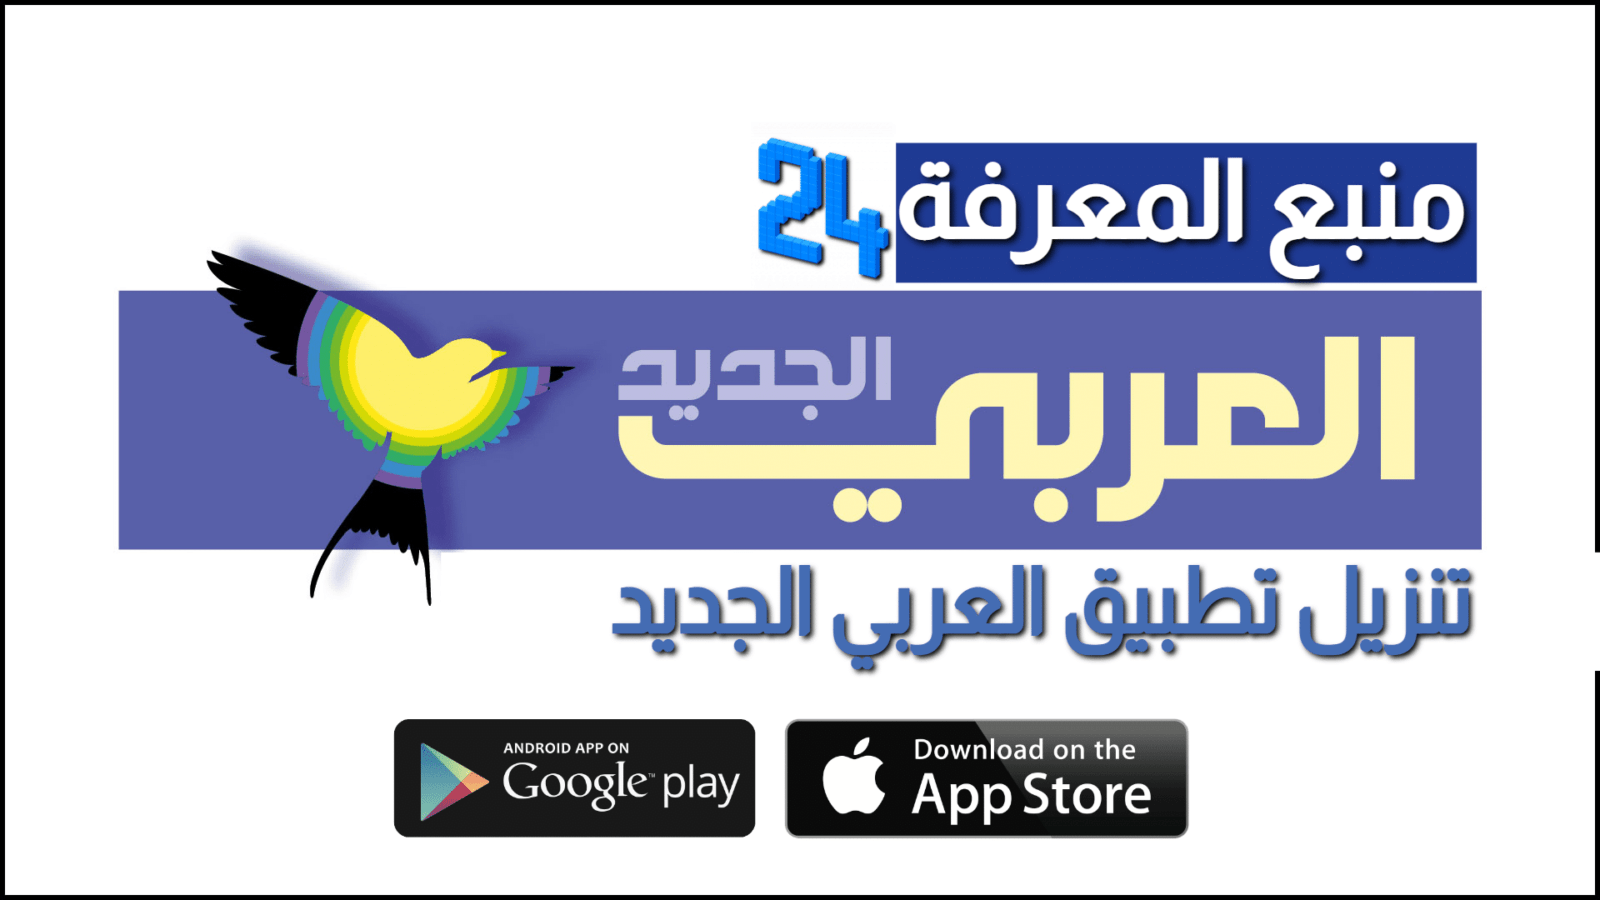 تنزيل تطبيق العربي الجديد | قناة العربي 2021